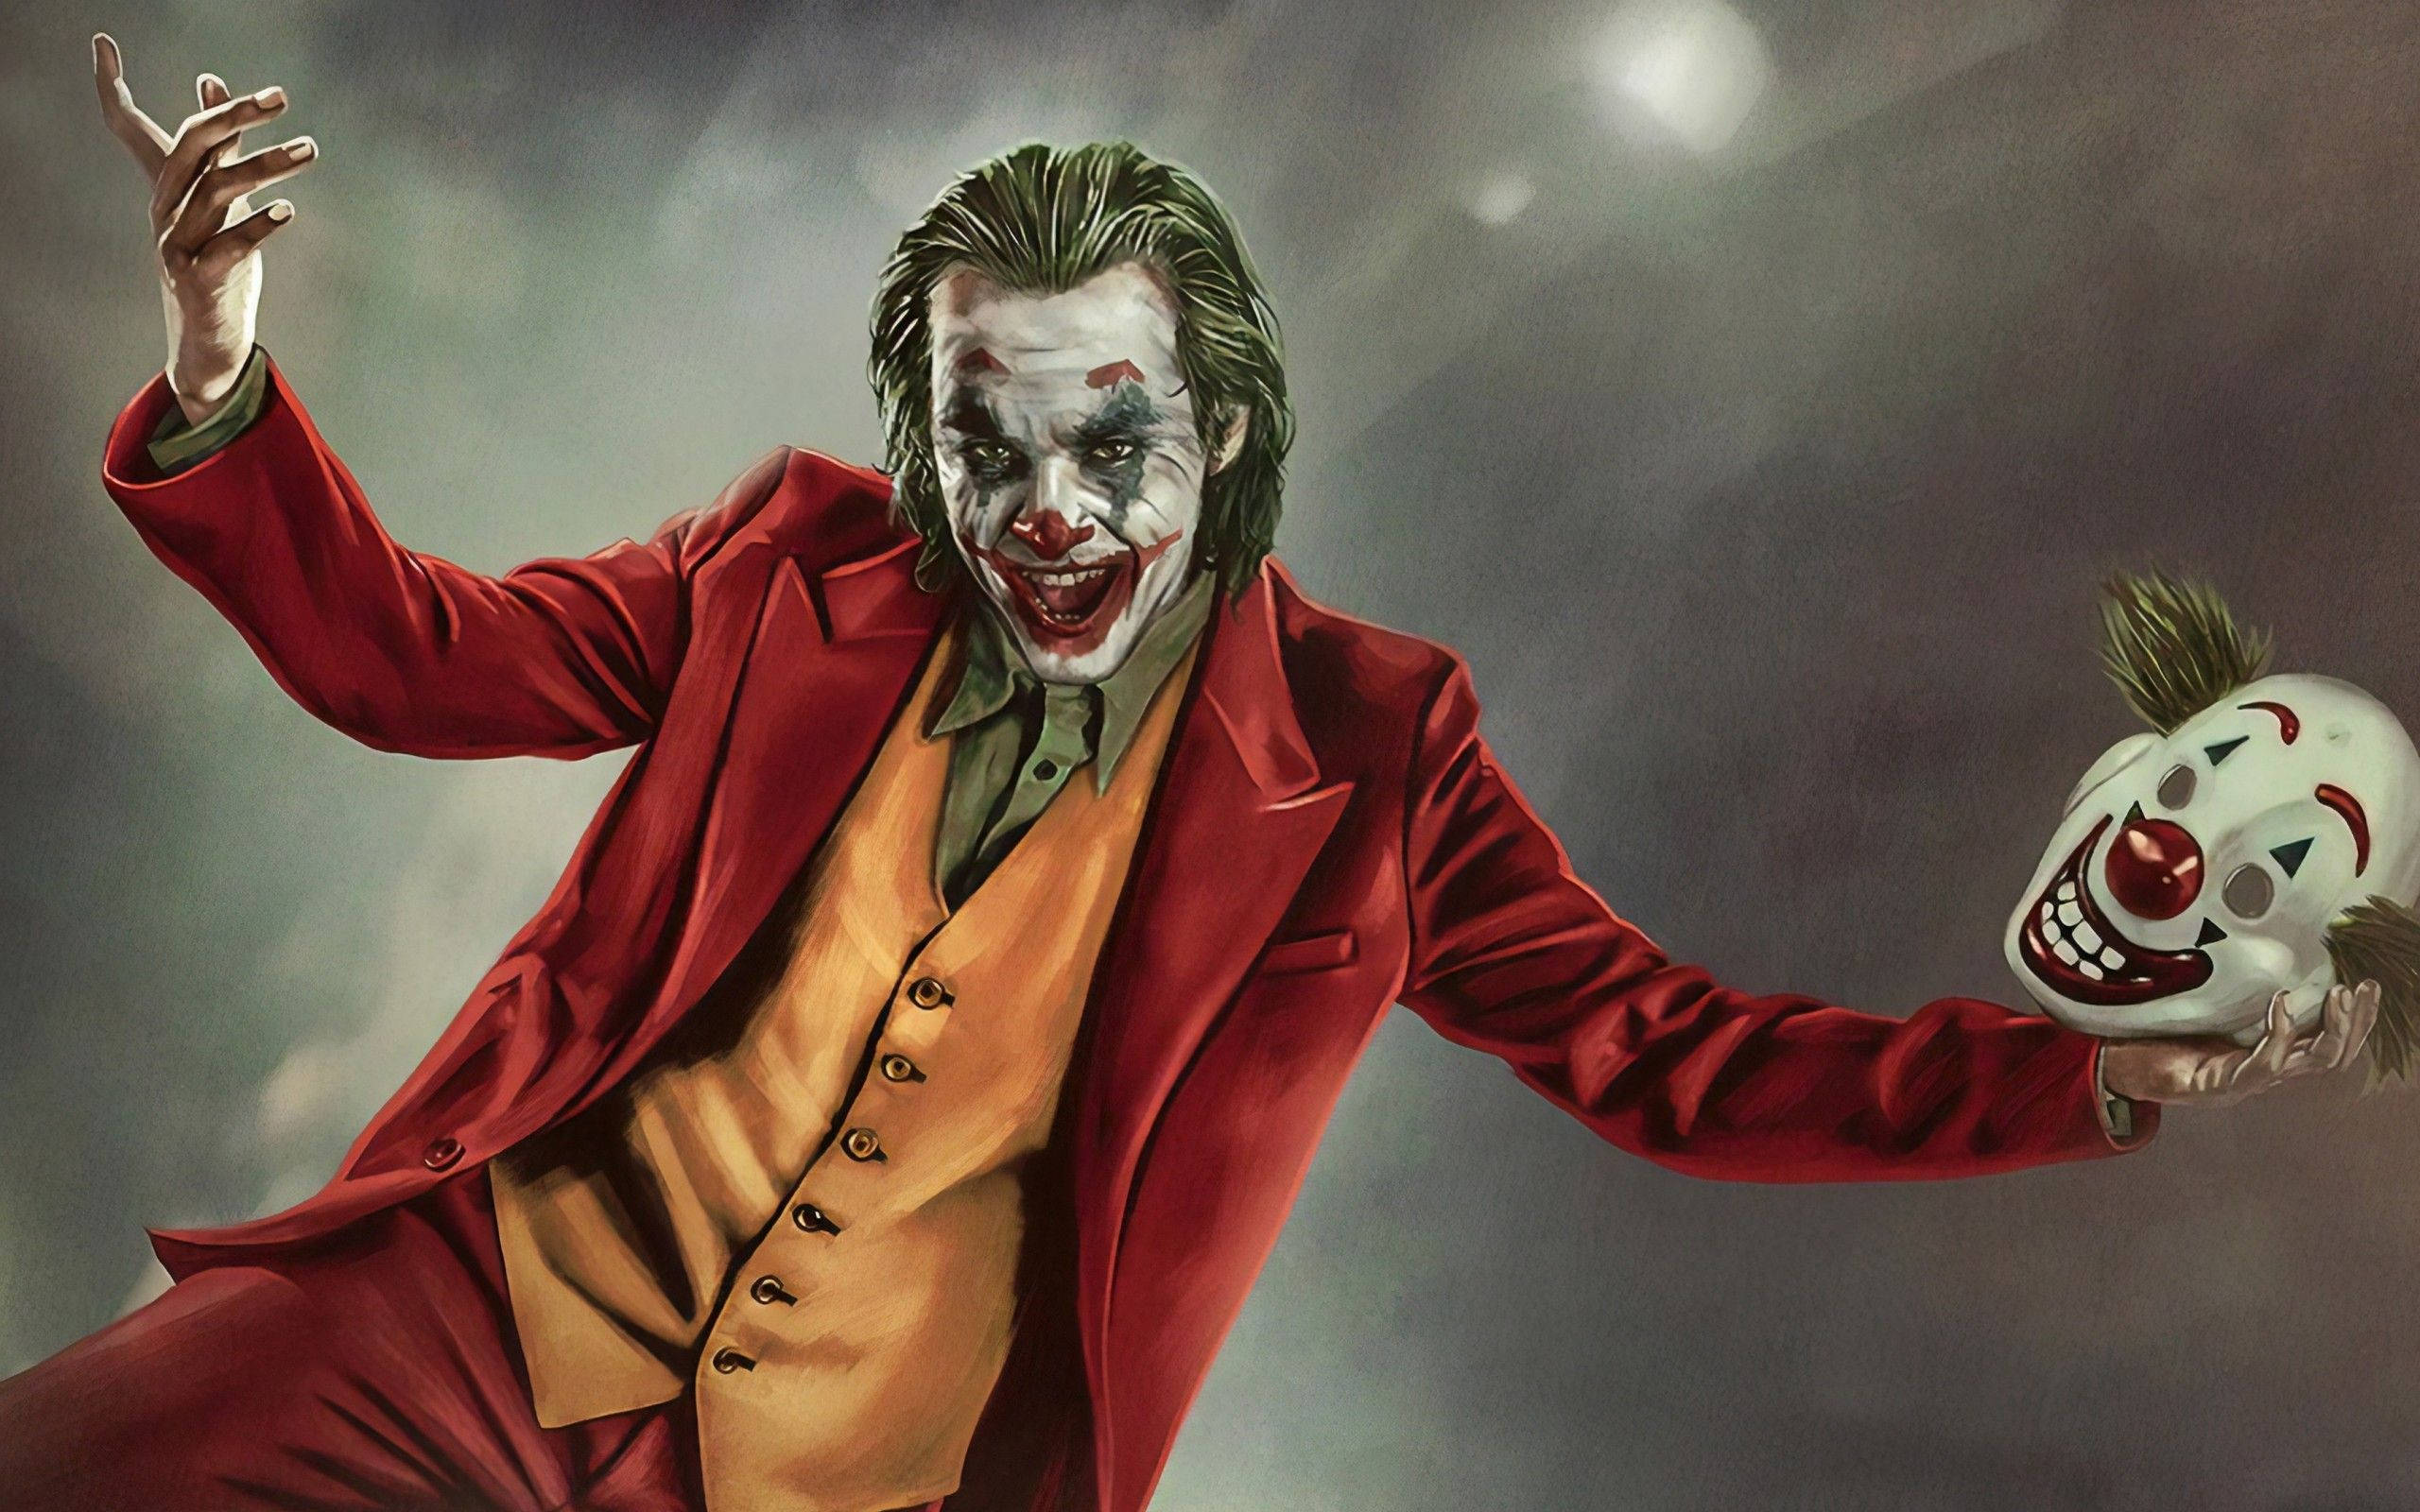 Goofy Poster Of Joker 2019 Background